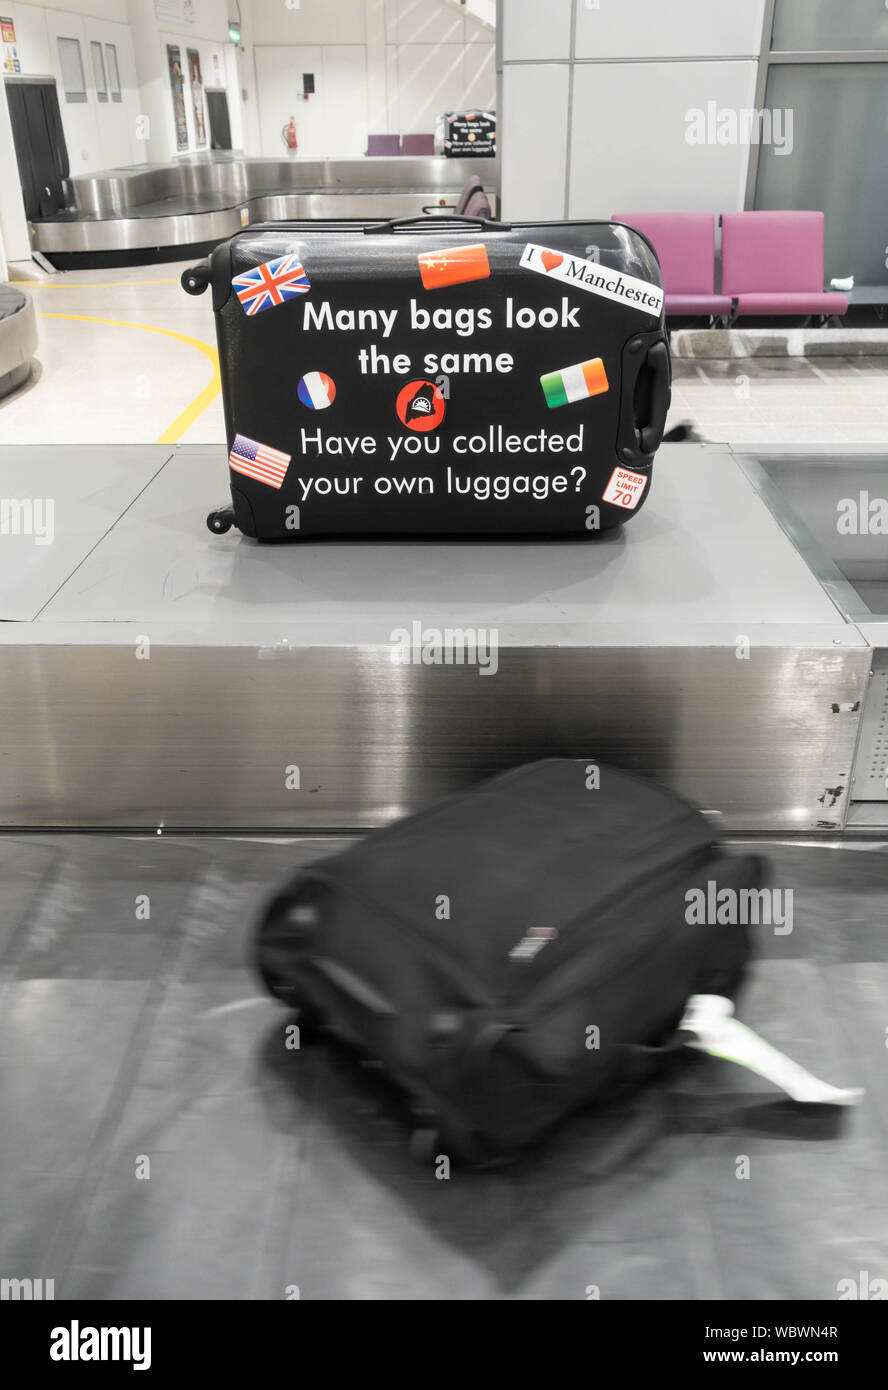 Eine Erinnerung an die Passagiere auf ihr Gepäck am Flughafen Karussell korrekt Koffer zu holen. Flughafen Manchester. Großbritannien Stockfoto